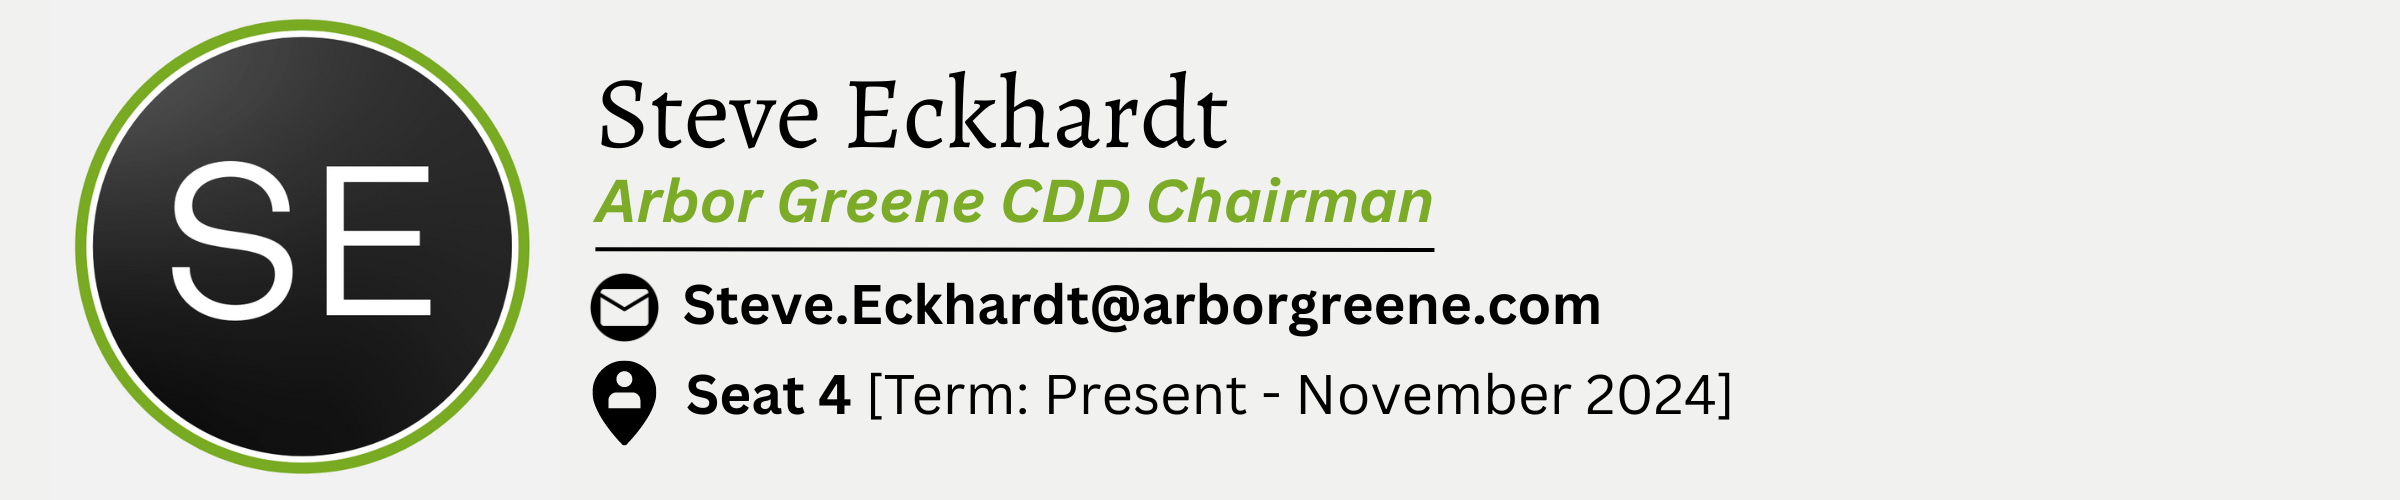 Steve Eckhardt. Arbor Greene CDD Chairman. E-Mail is Steve.Eckhardt@arborgreene.com. Seat #4. Term from Present to November 2024.